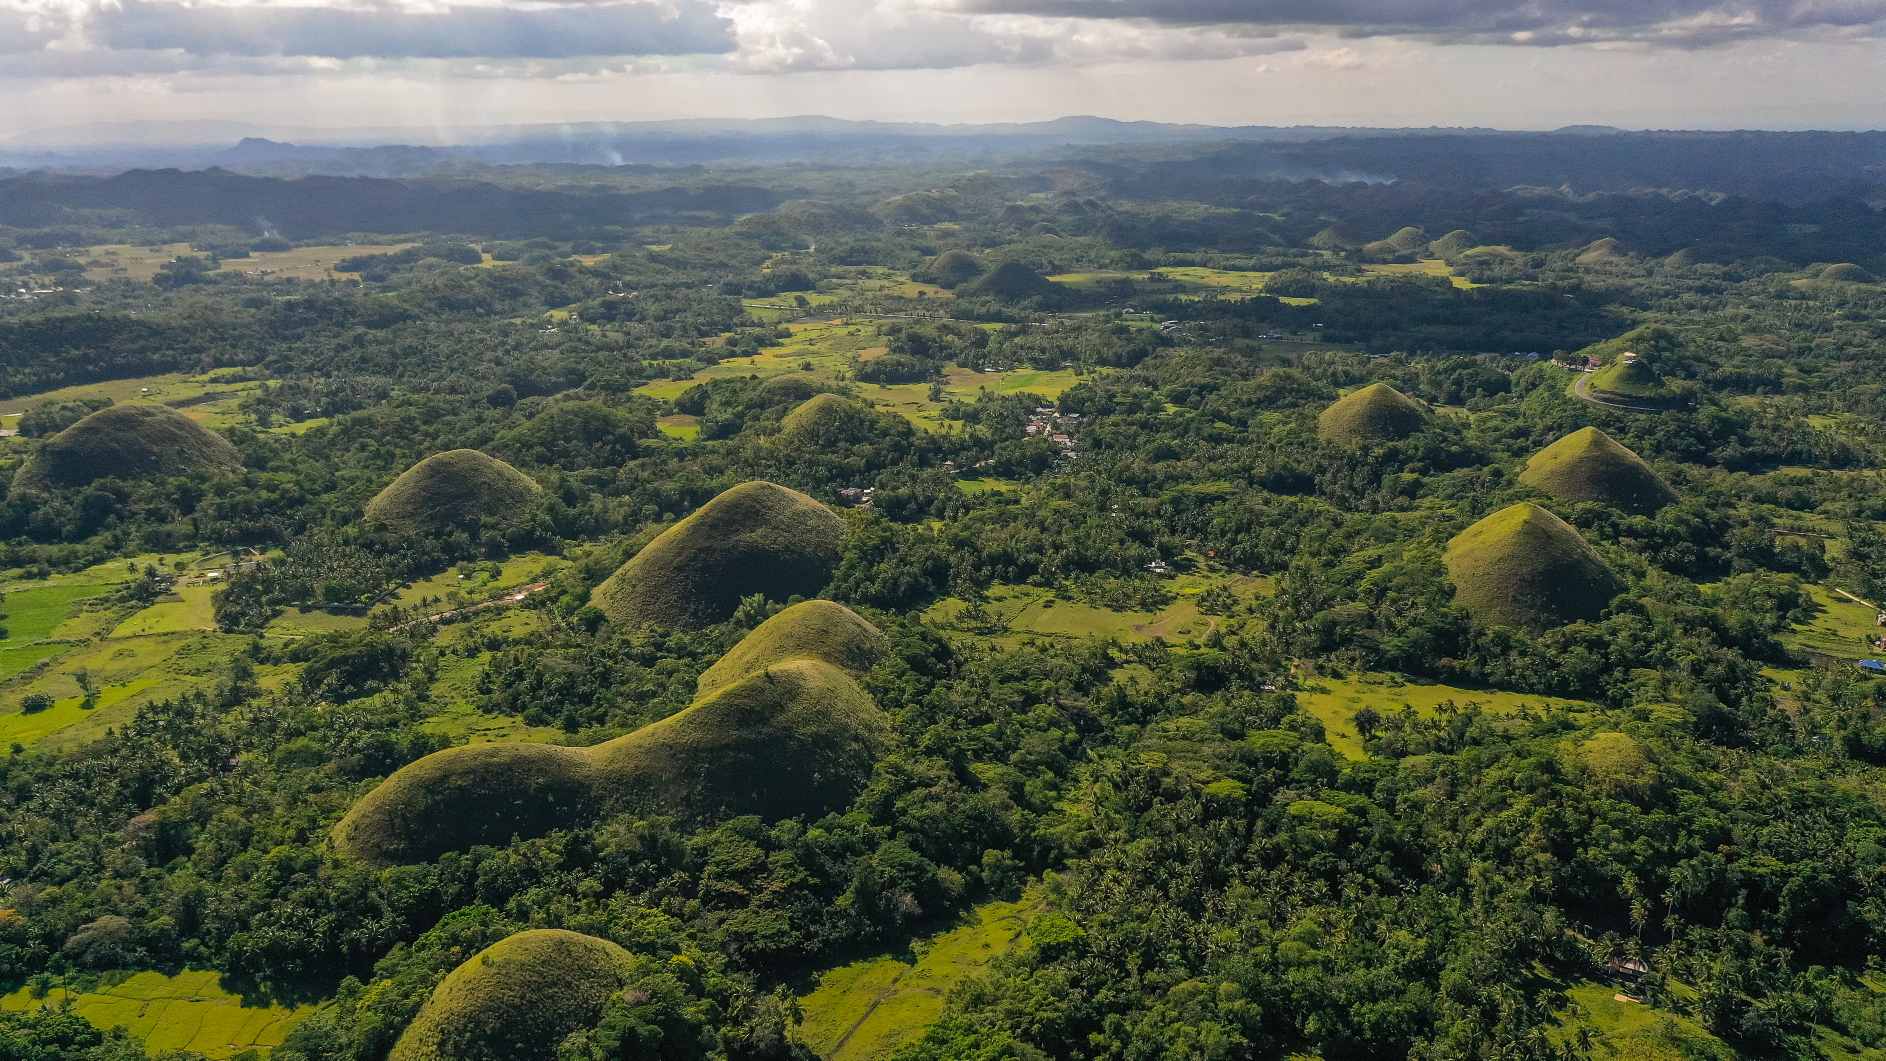 تپه ها در میان زمین های کشاورزی. نماد طبیعی تپه های شکلاتی، جزیره بوهول، فیلیپین. © اعتبار تصویر: الکسی کورنیلیف | دارای مجوز از DreamsTime، ID: 223476330